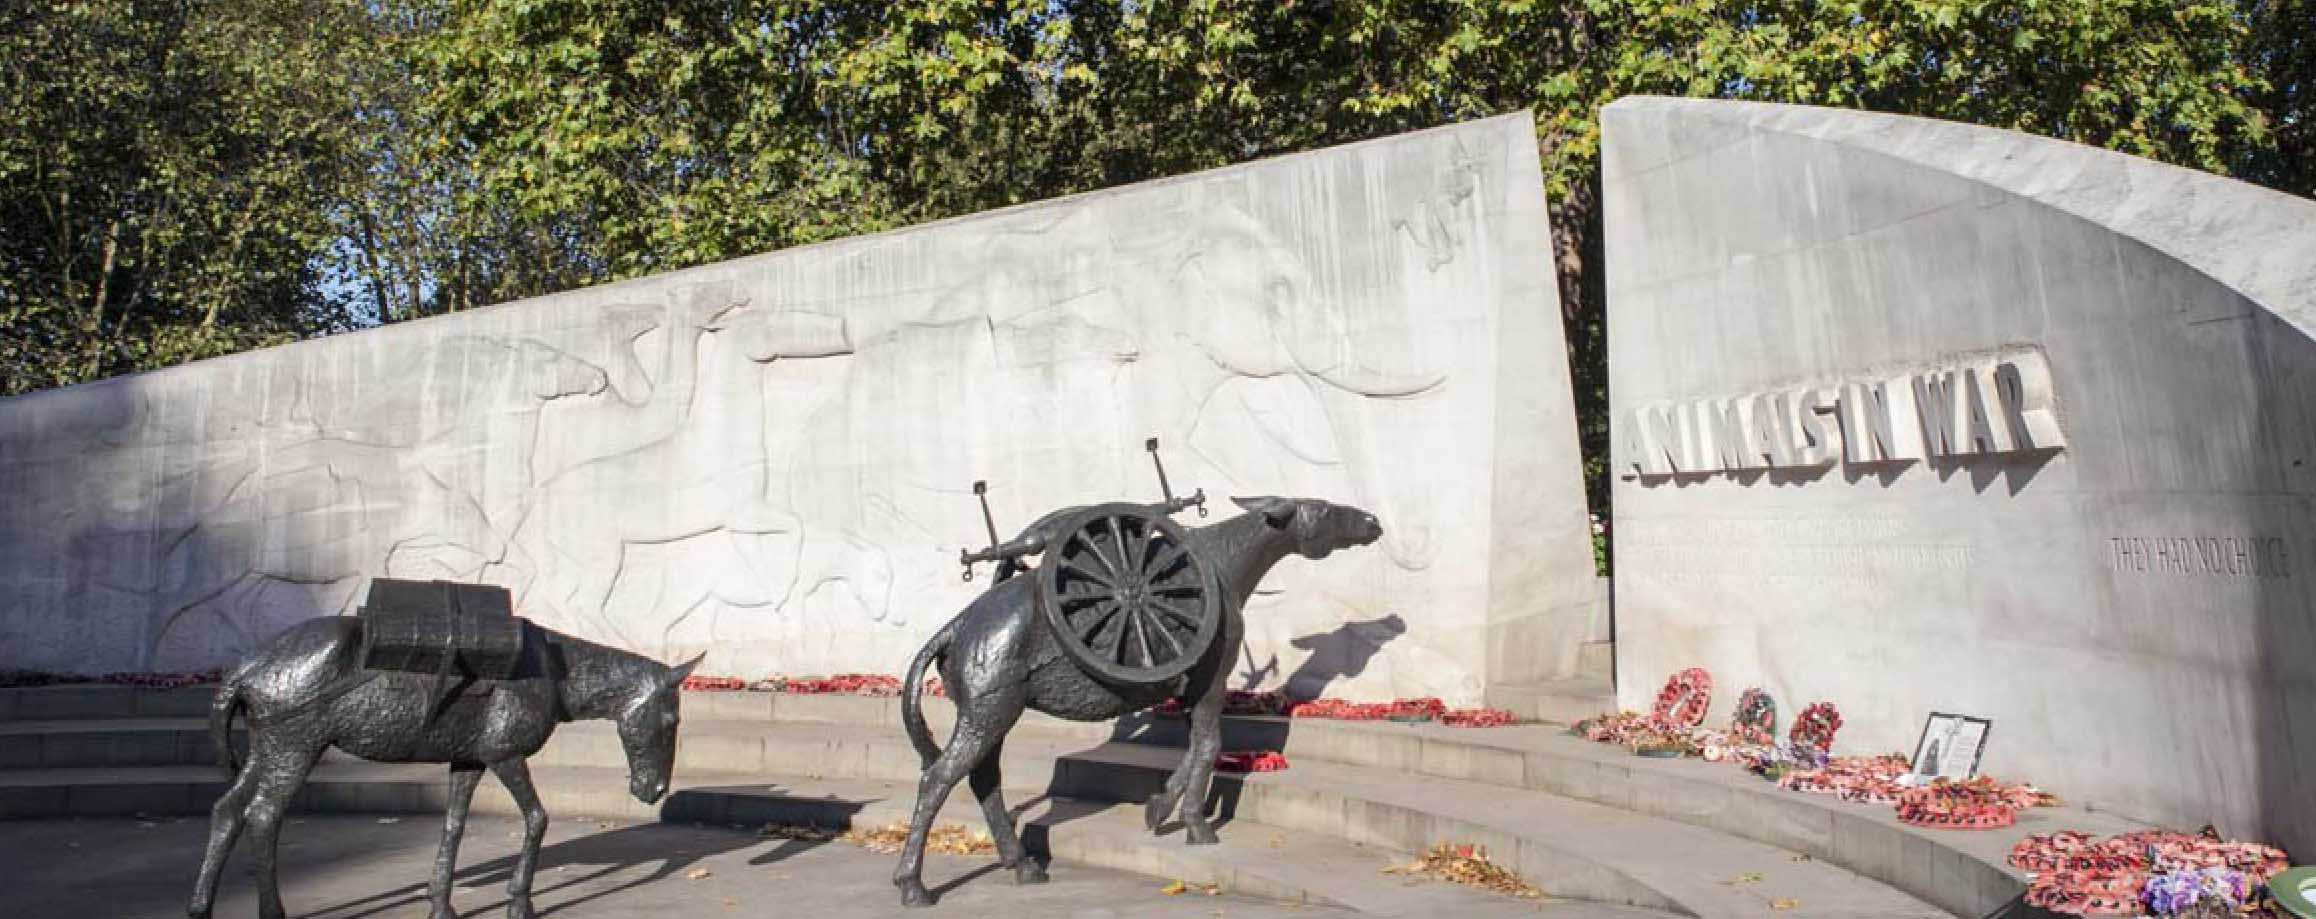 Мемориал «Животные на войне». Лондон (Великобритания).
